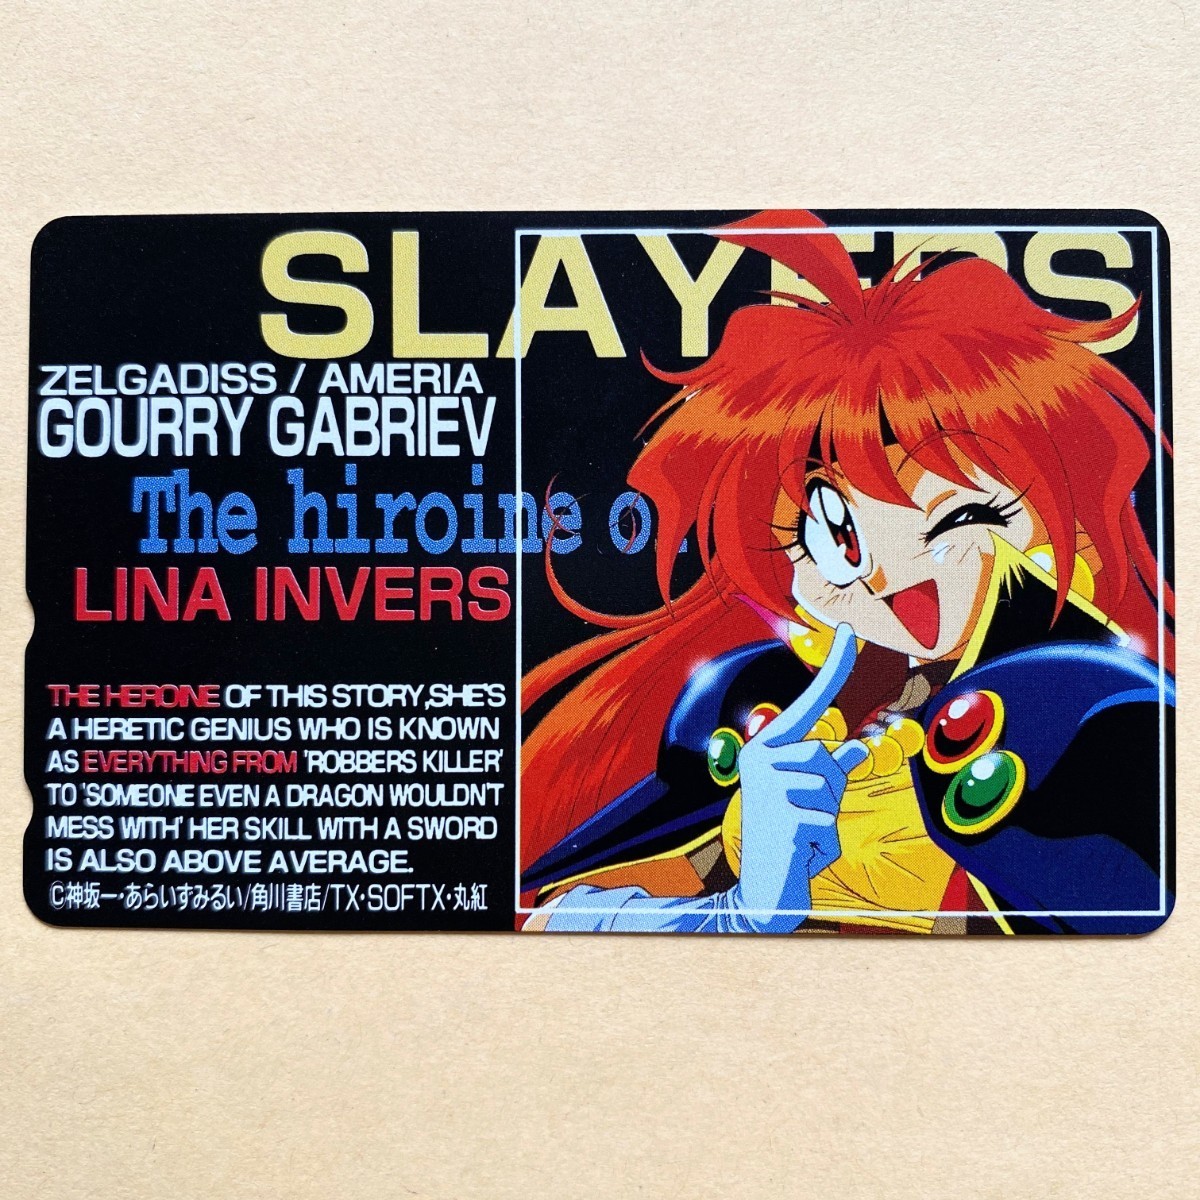 [ не использовался ] телефонная карточка 50 раз Slayers двусторонний печать lina= Inver s ах .. смотреть .